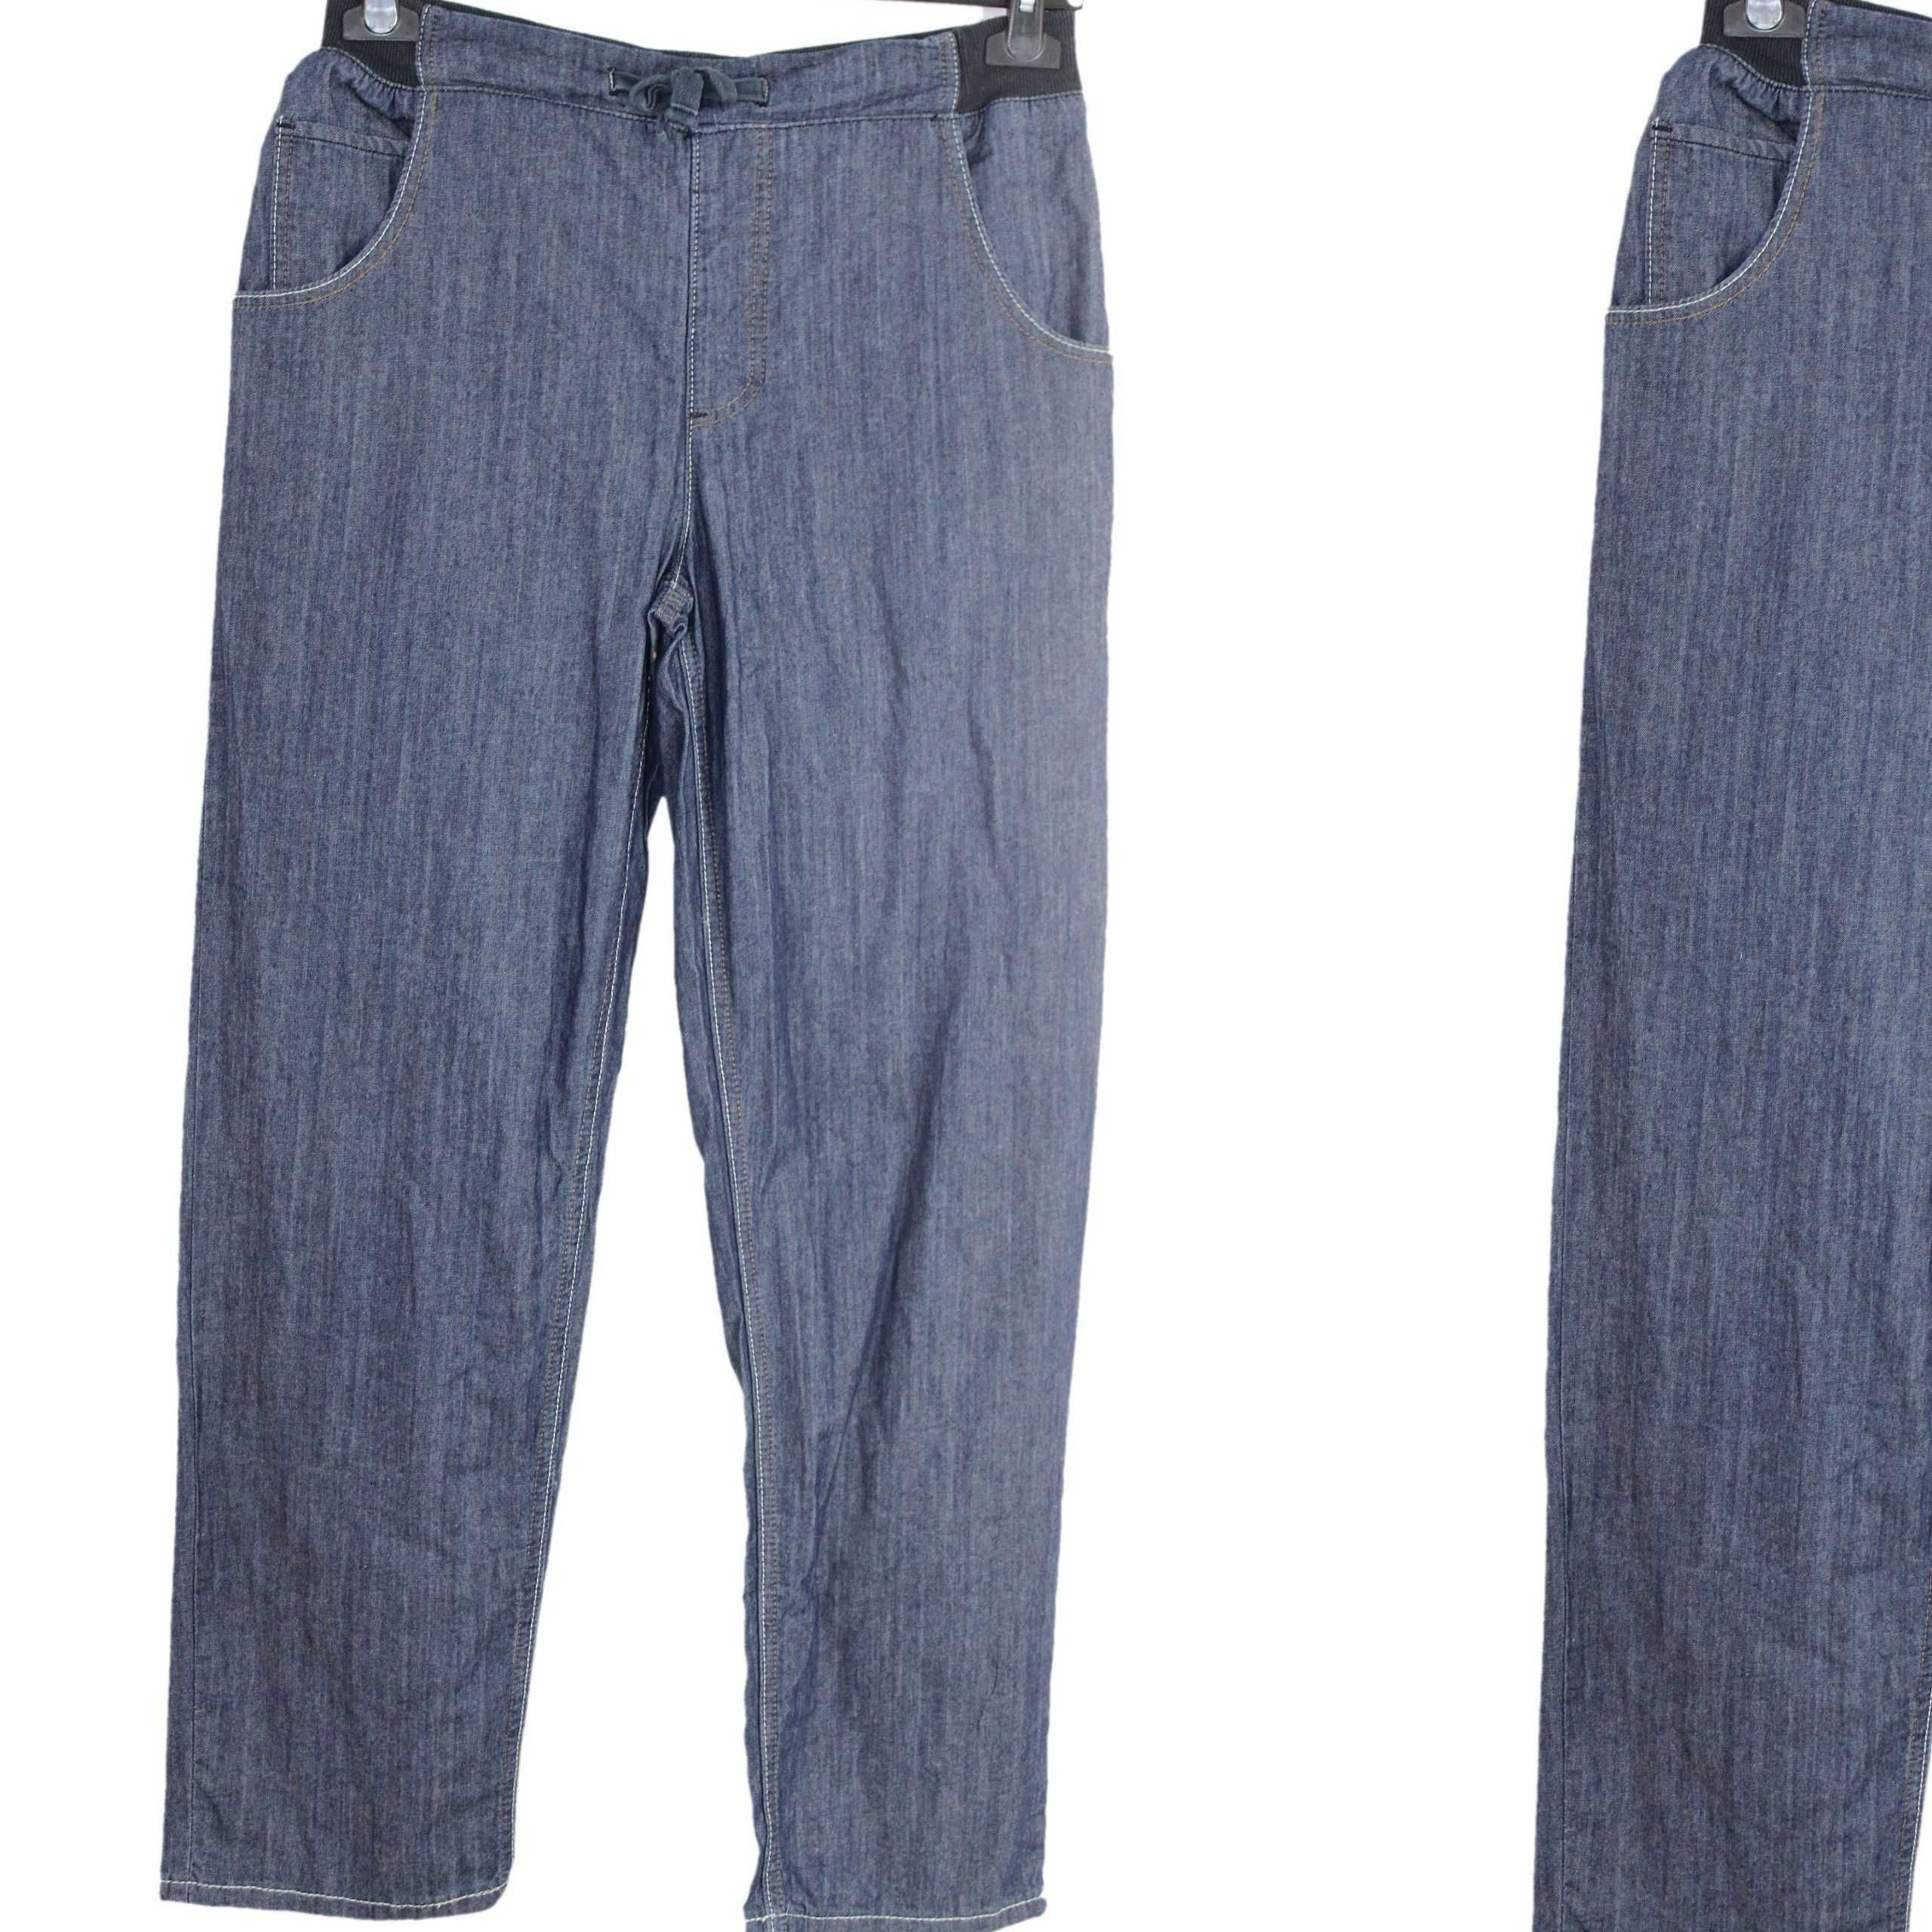 w8 CATAMARAN Wygodne Męskie Proste Spodnie Jeans w Gumkę M/L